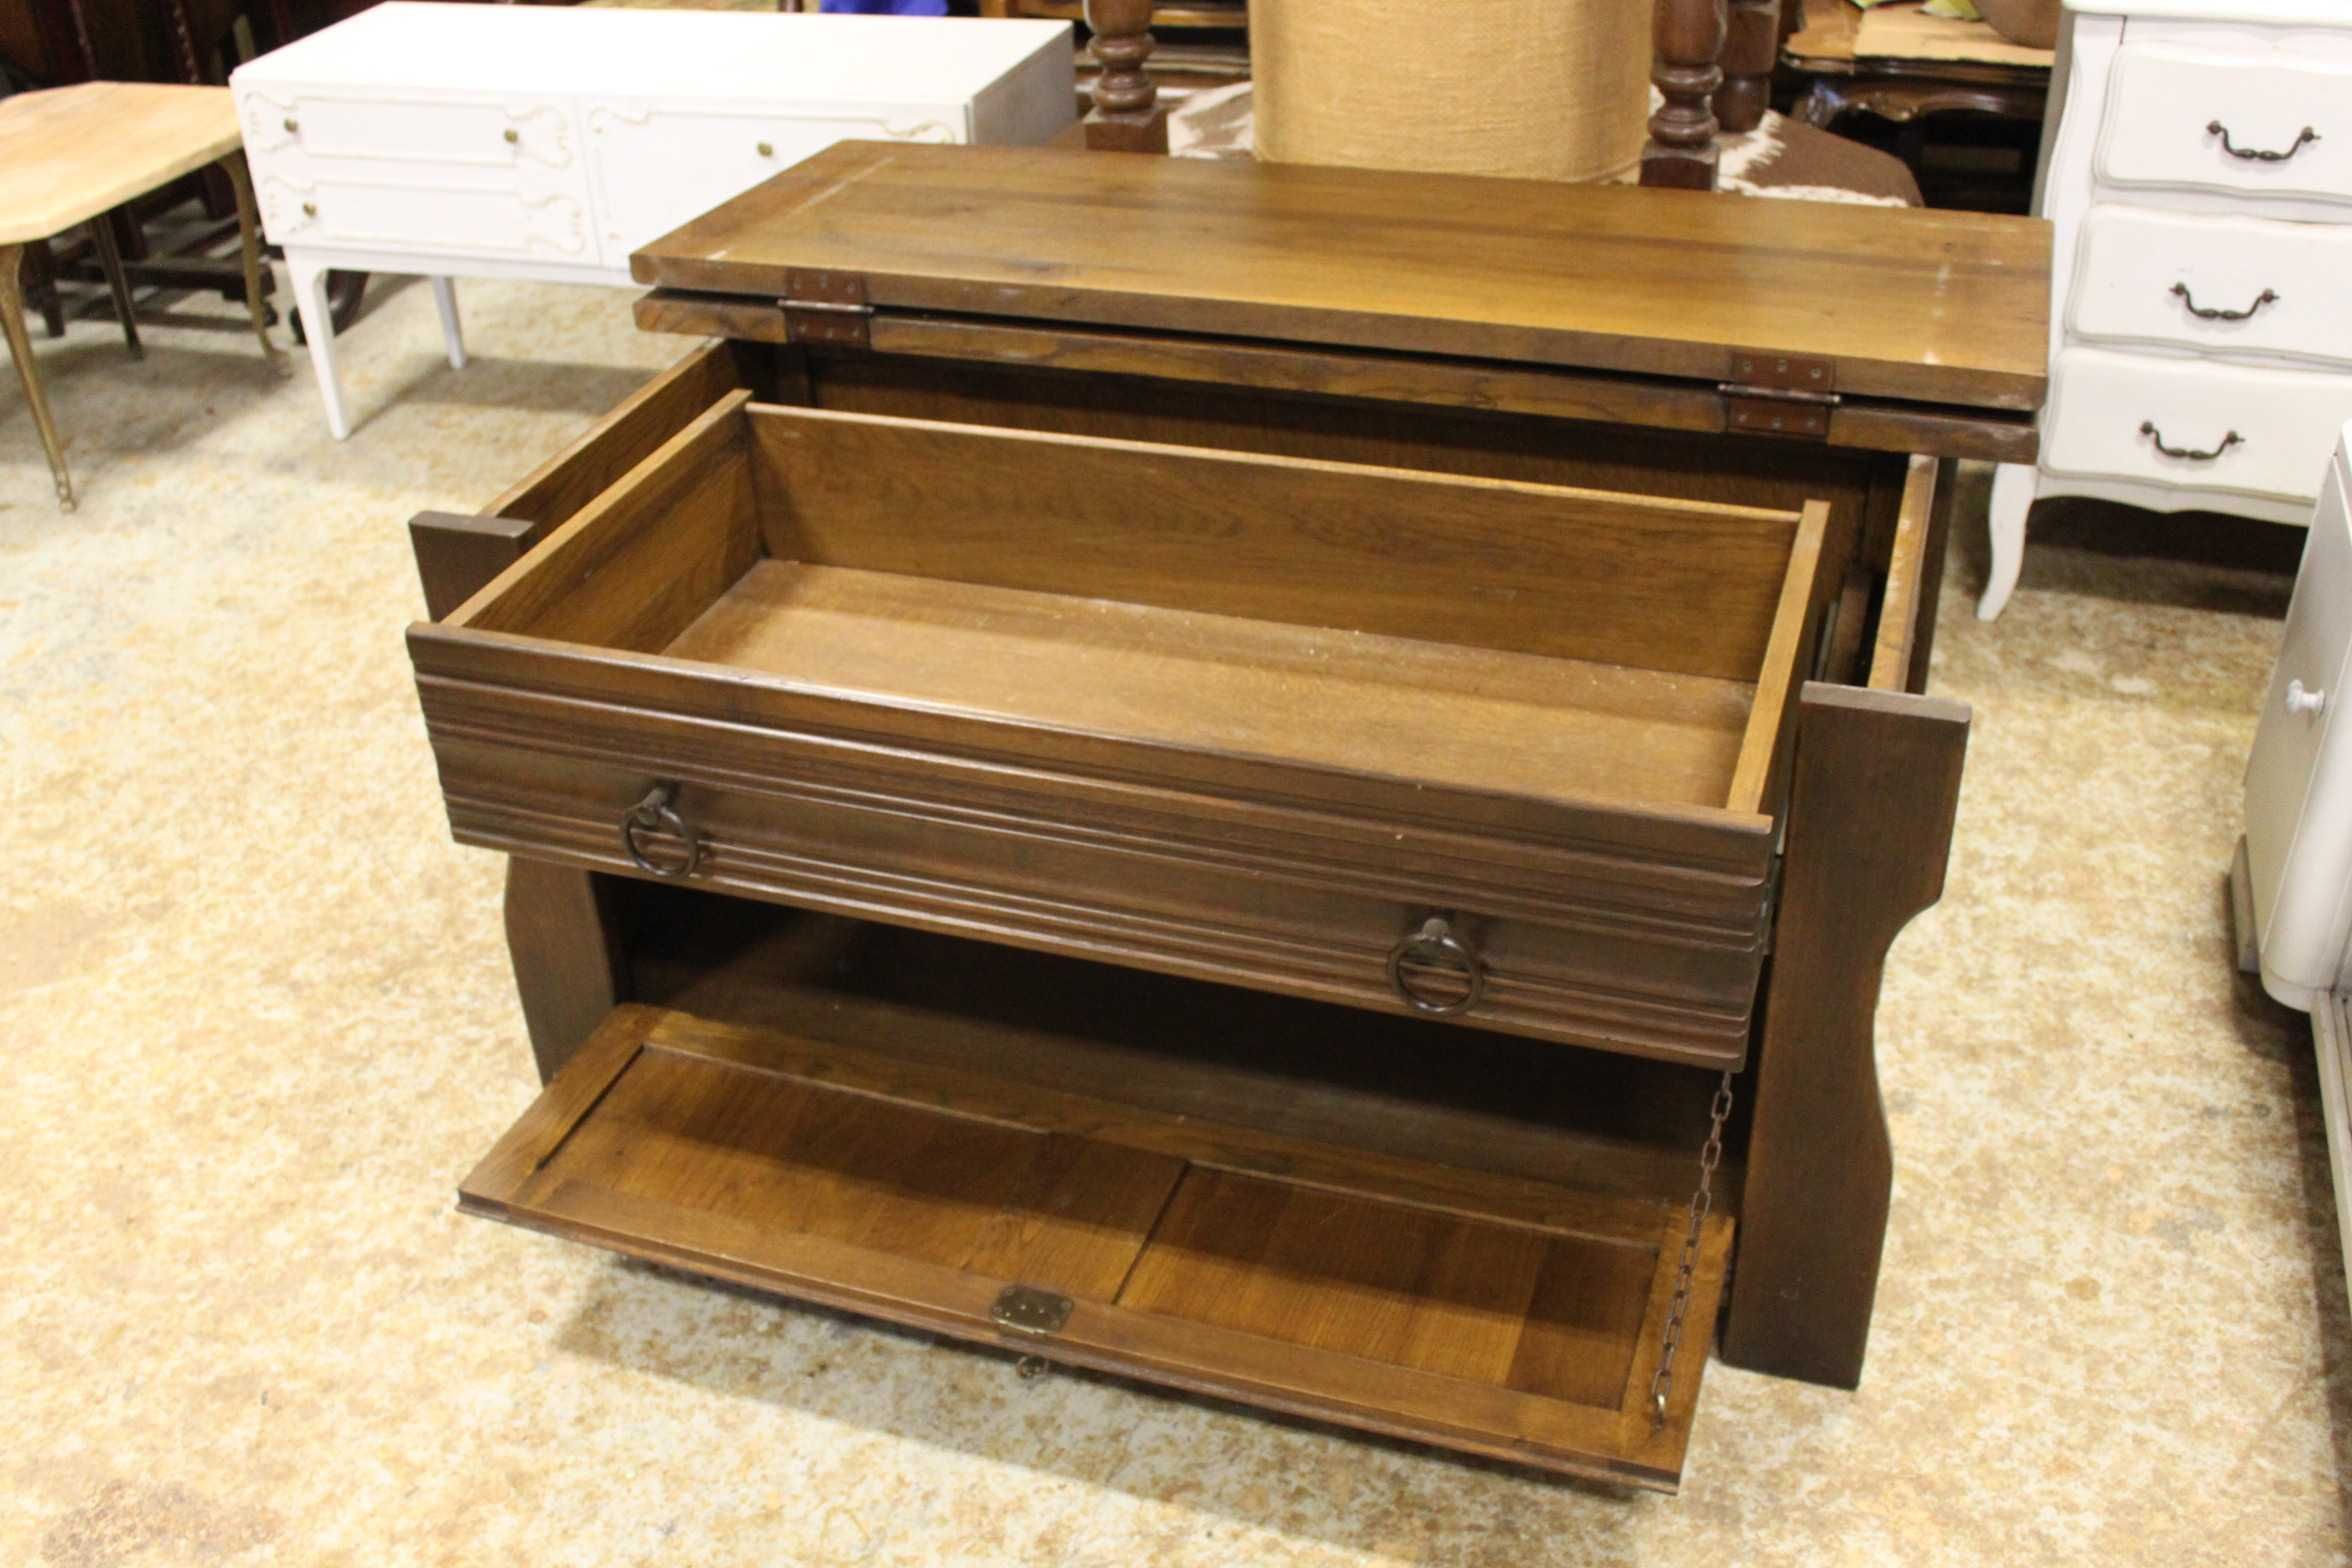 Drewniana skrzynia/komoda z otwieranym blatem, szafką, szufladą